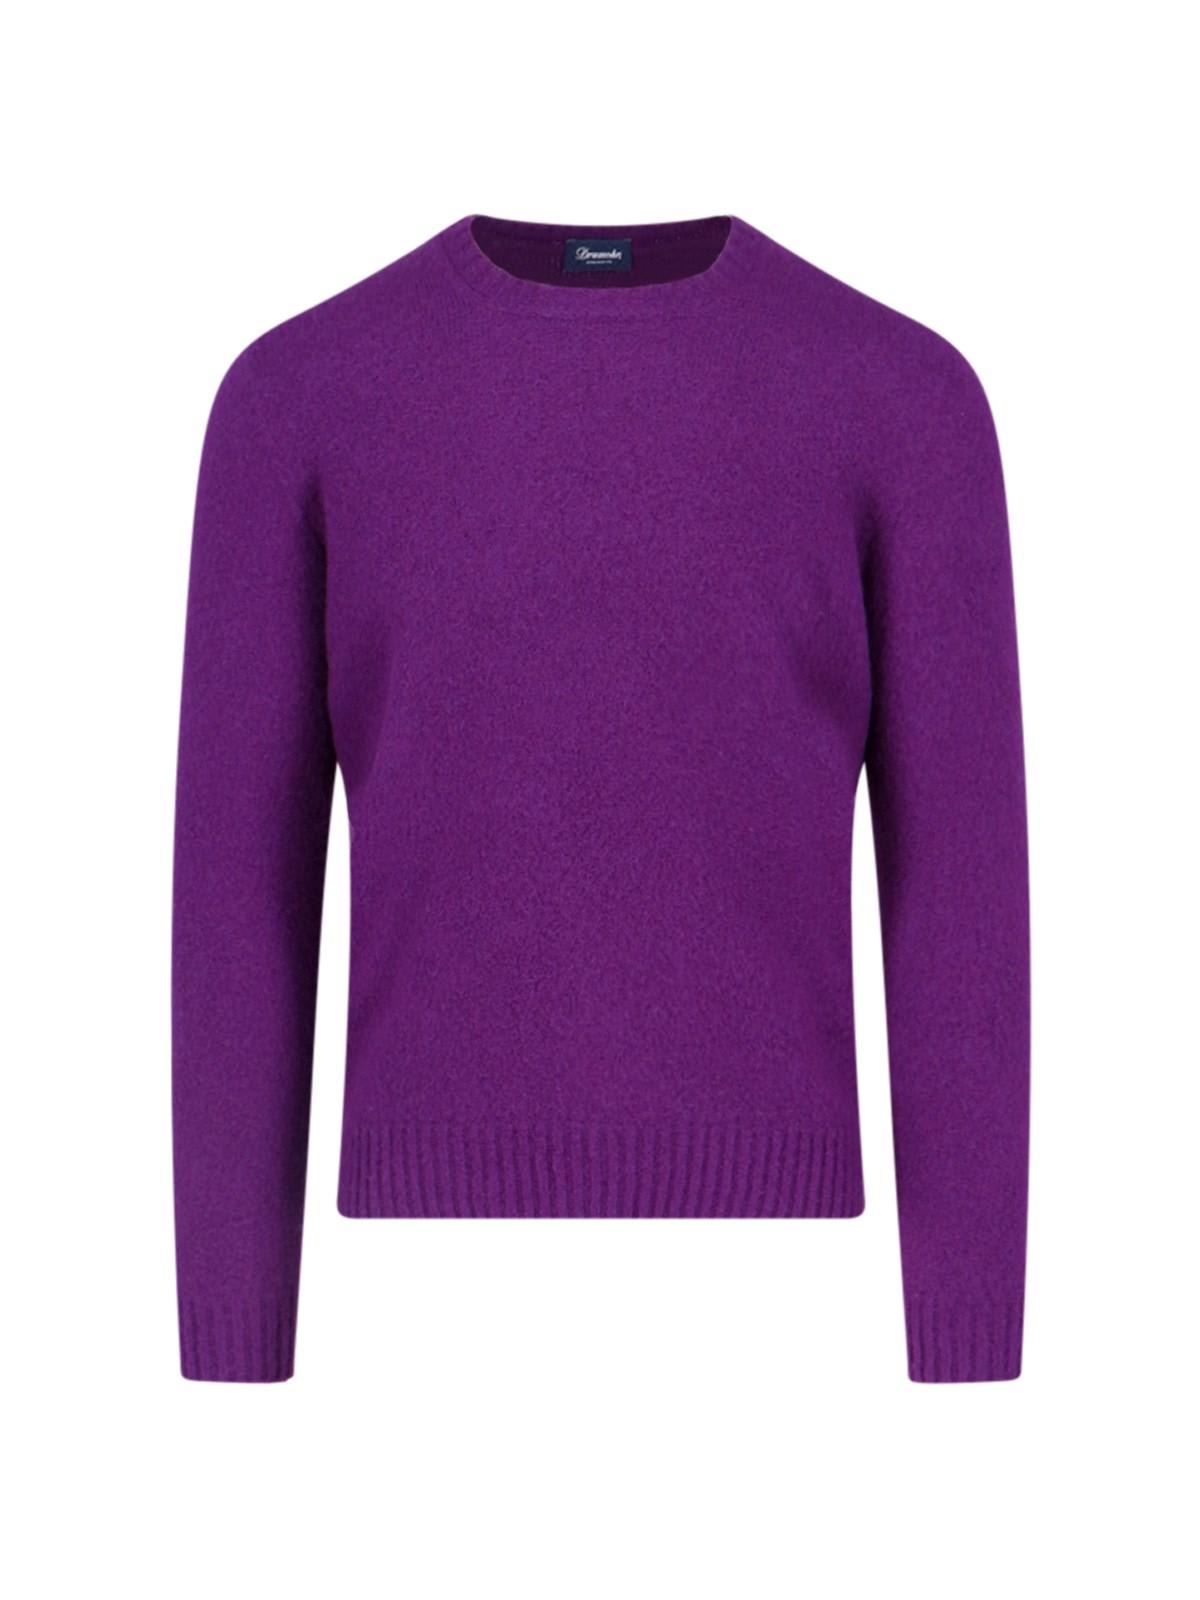 Shop Drumohr Crewneck Sweater